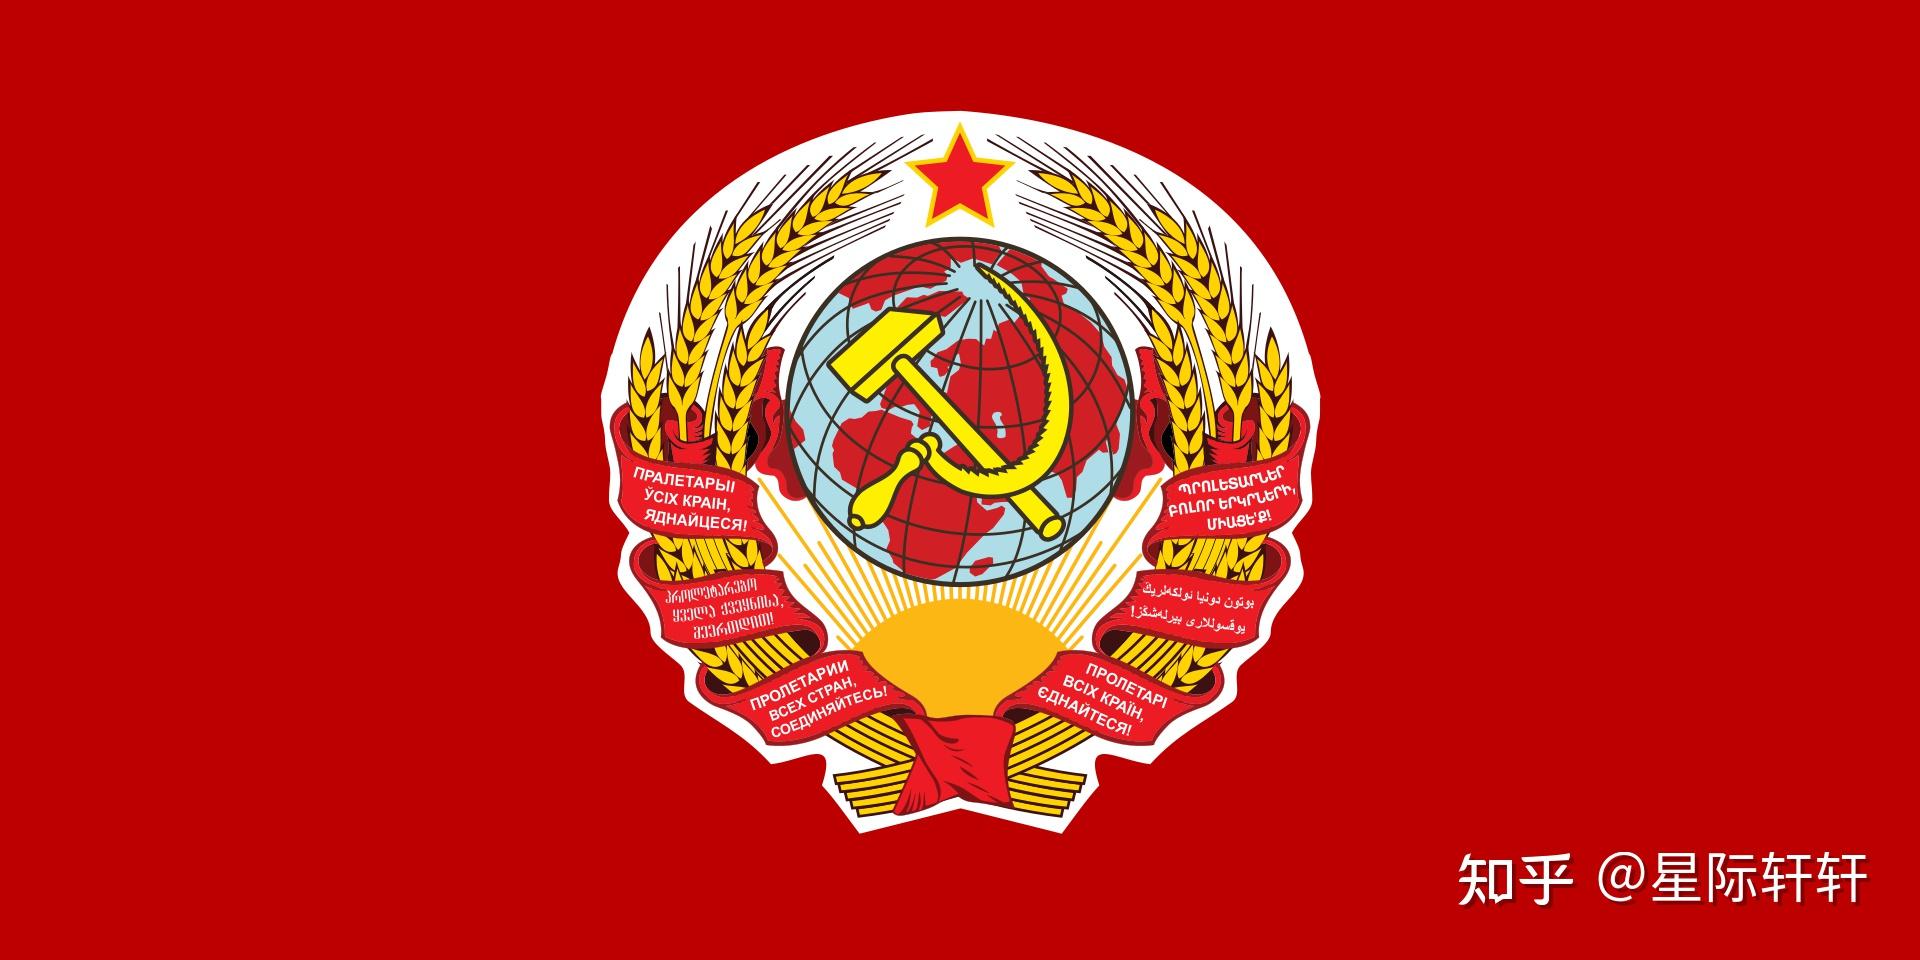 请问苏联国旗与苏修的国旗有什么区别呢